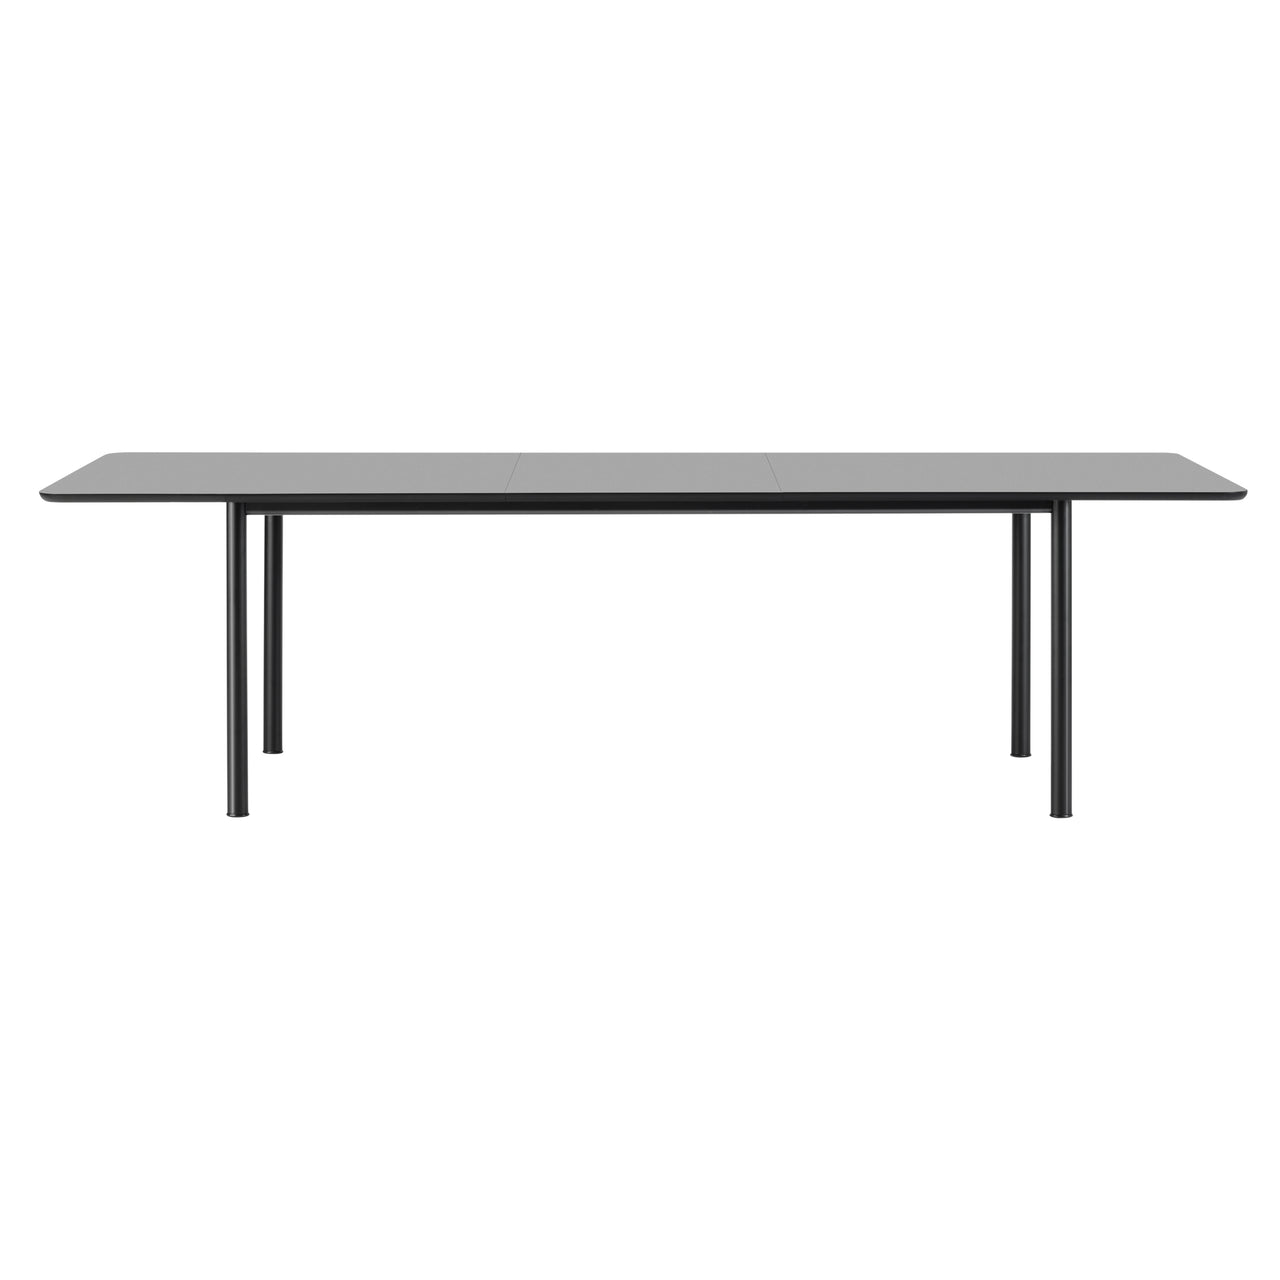 Plan Extendable Table: Black Laminate + Black